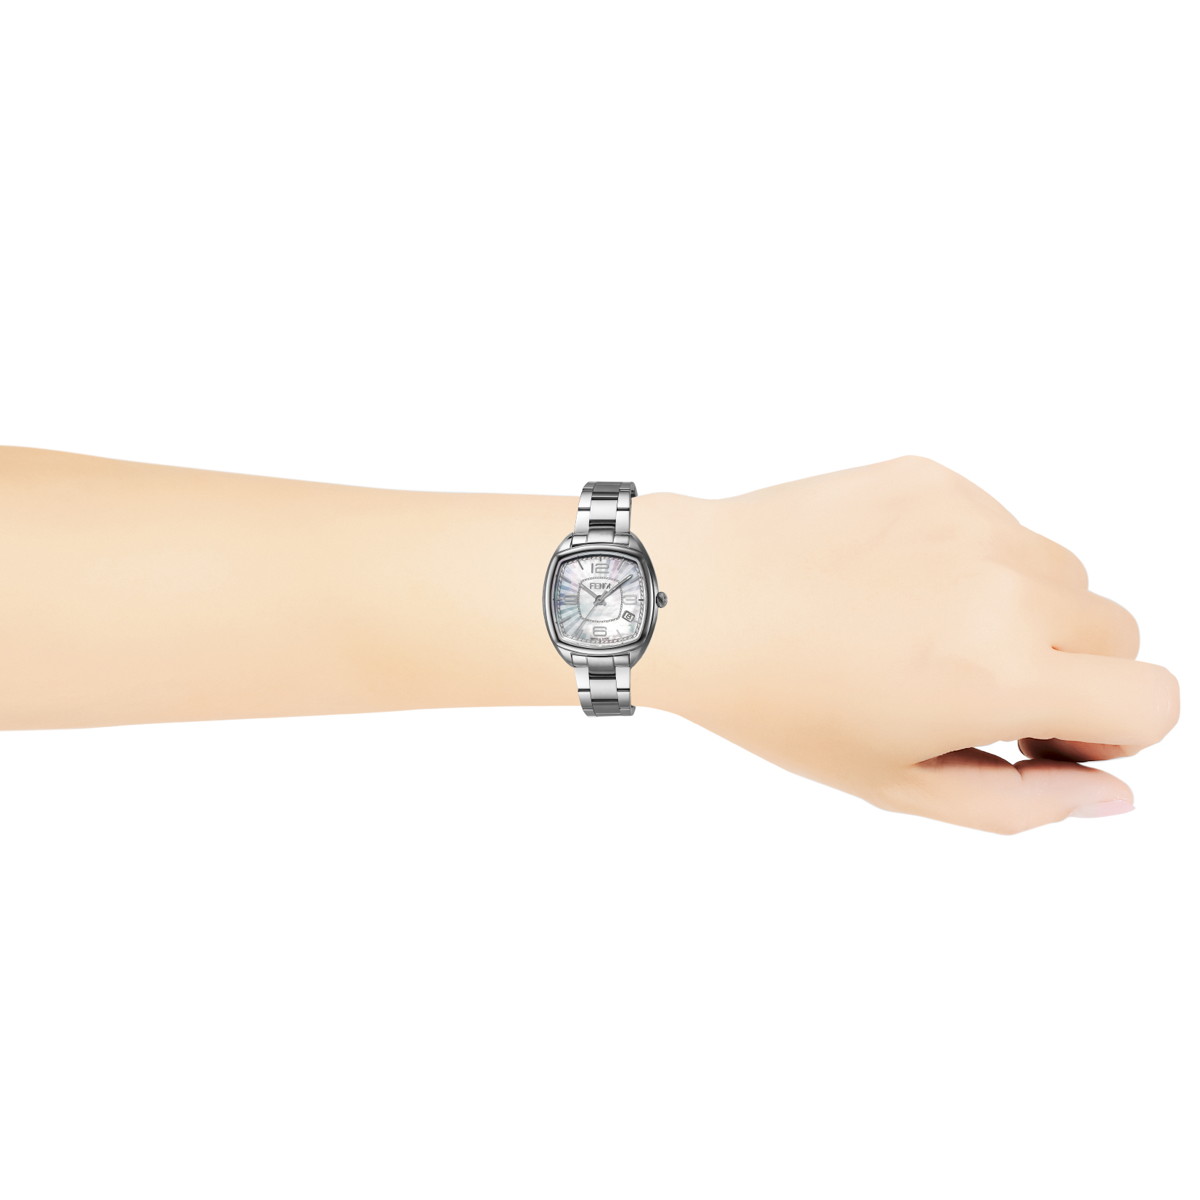 ■腕時計 レディース Momento Fendi ホワイトパール